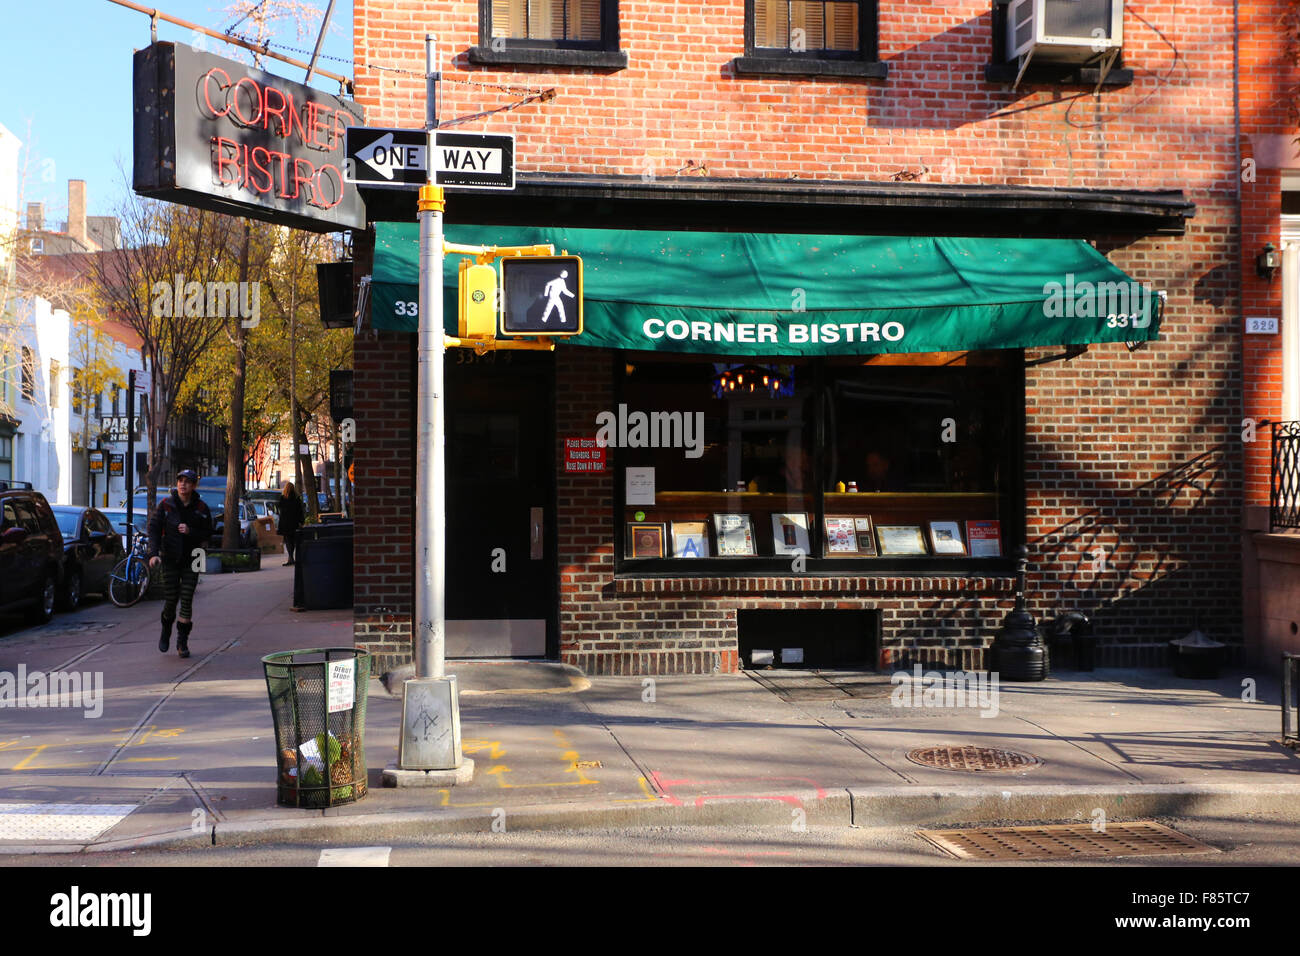 Le Corner Bistro, 331 West 4th St, New York, NY devanture extérieure d'un bar et restaurant dans le quartier de Greenwich Village de Manhattan. Banque D'Images